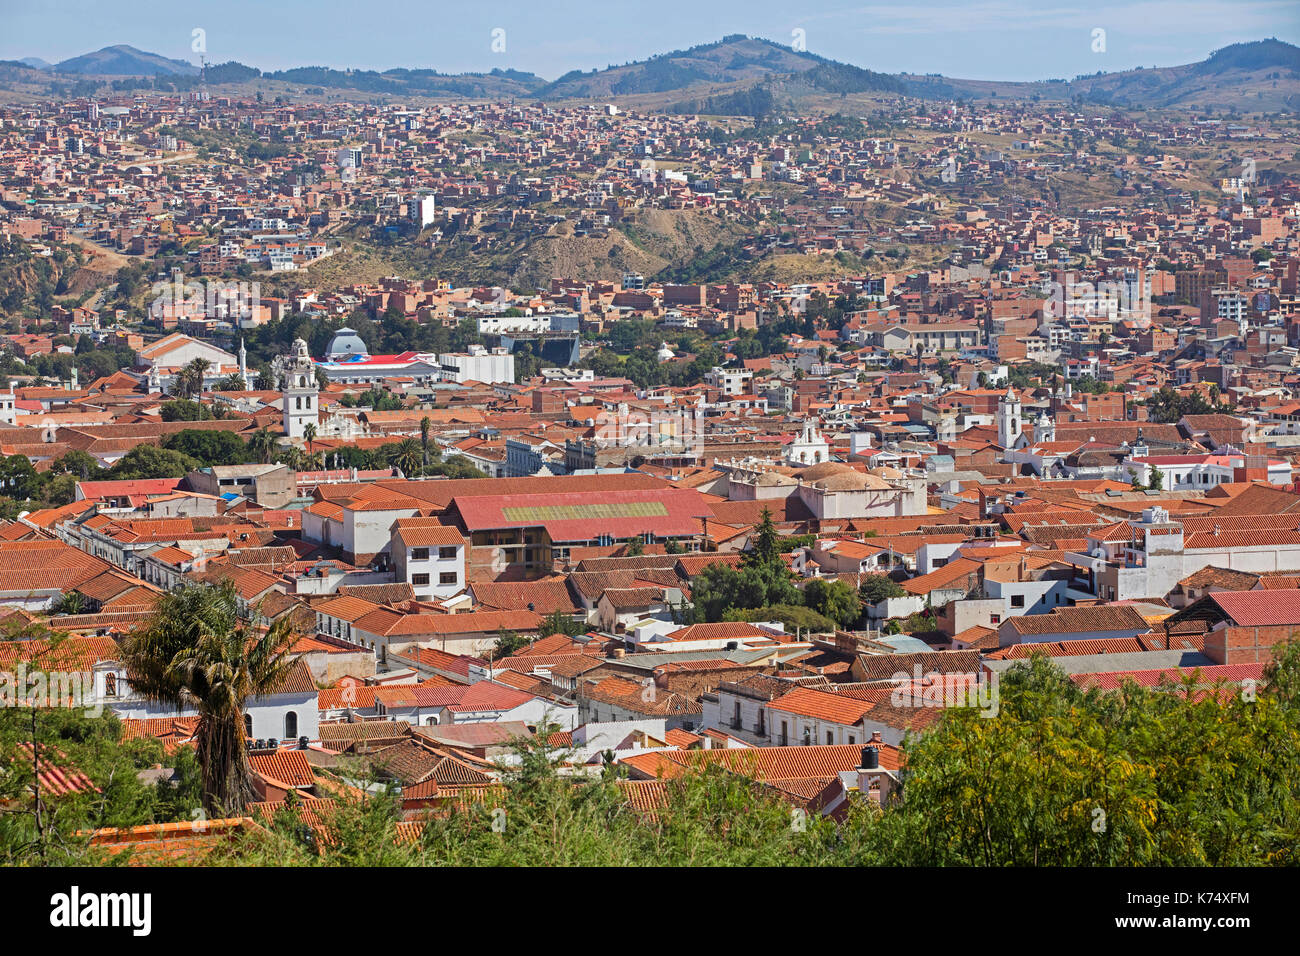 Vista aérea sobre la ciudad blanca de Sucre, la capital constitucional de Bolivia, en la provincia de Oropeza Foto de stock